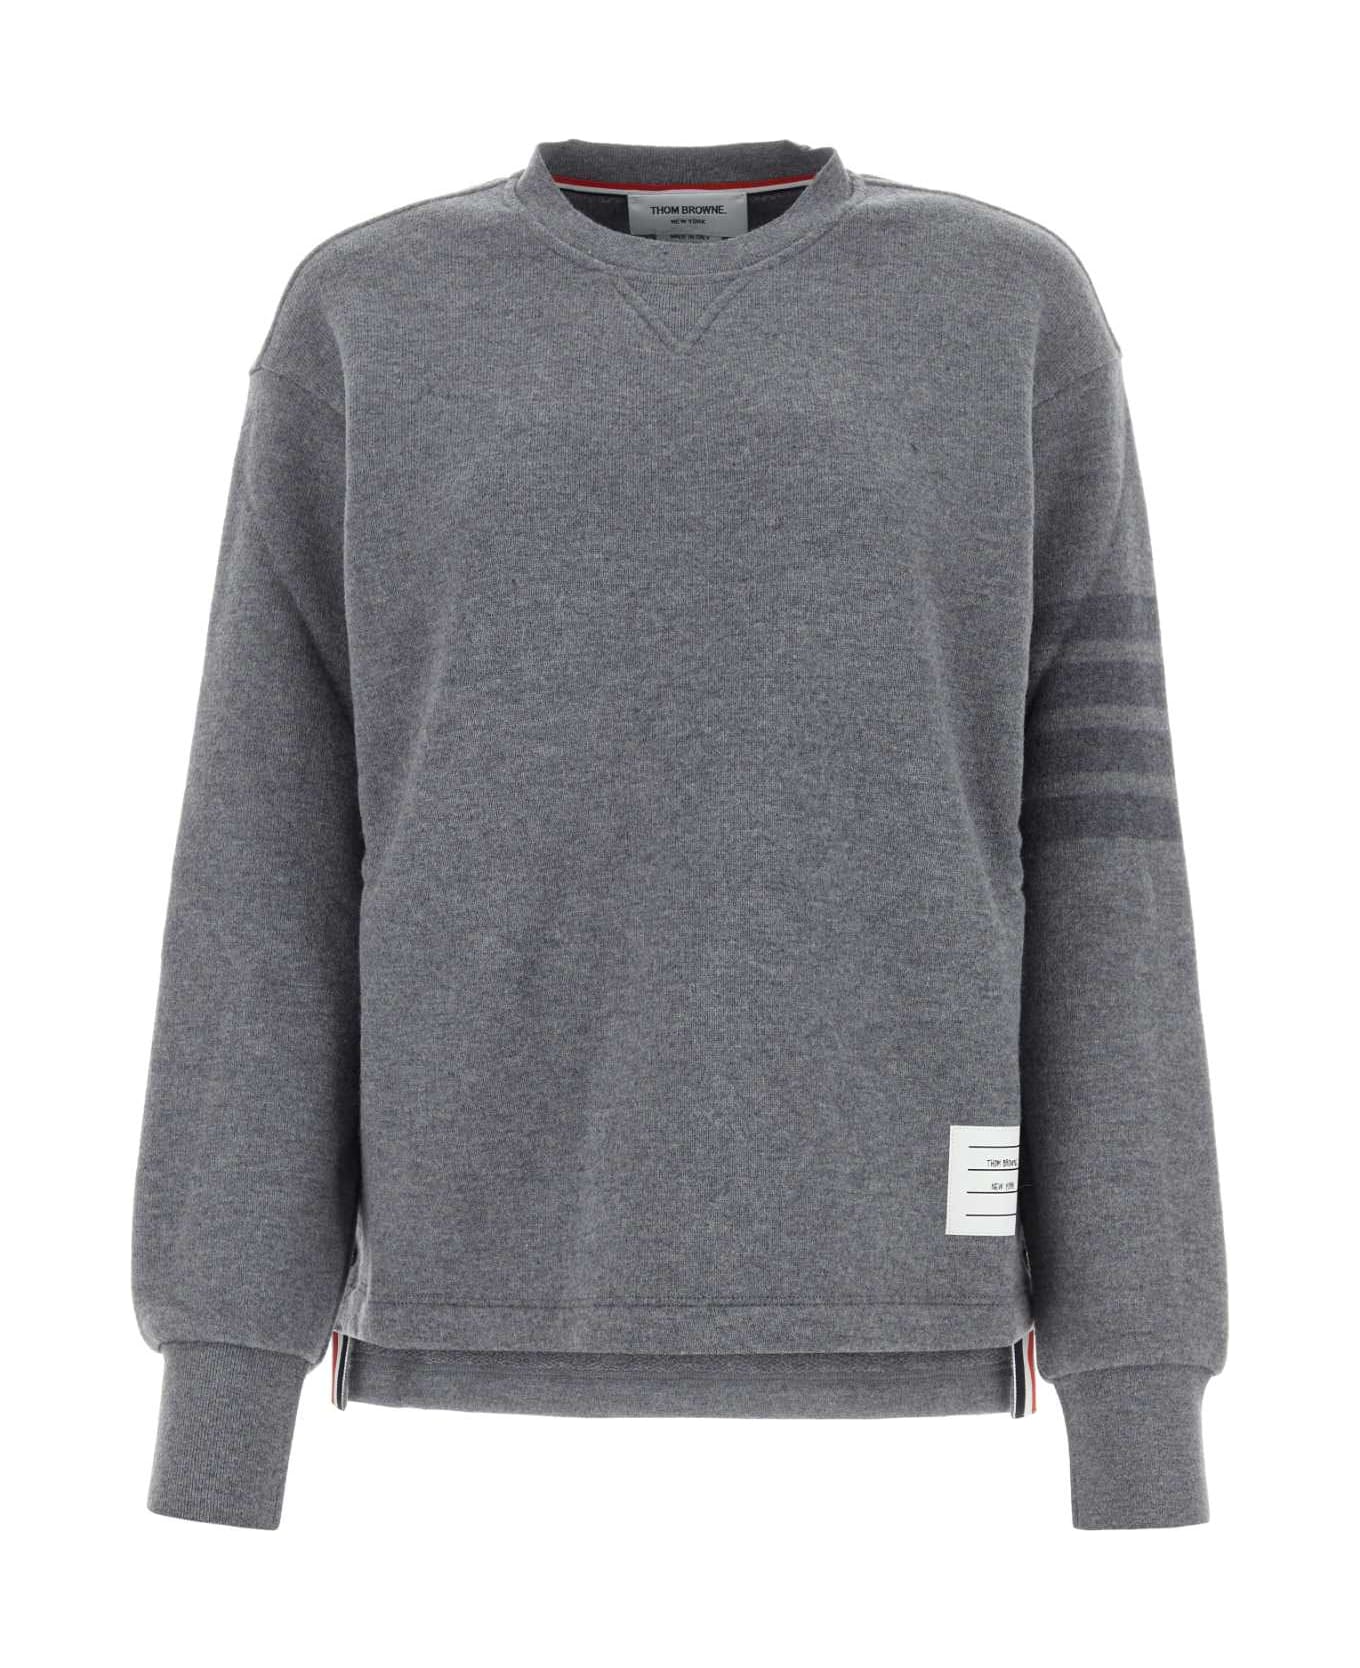 Thom Browne Grey Wool Sweatshirt - LTGREY